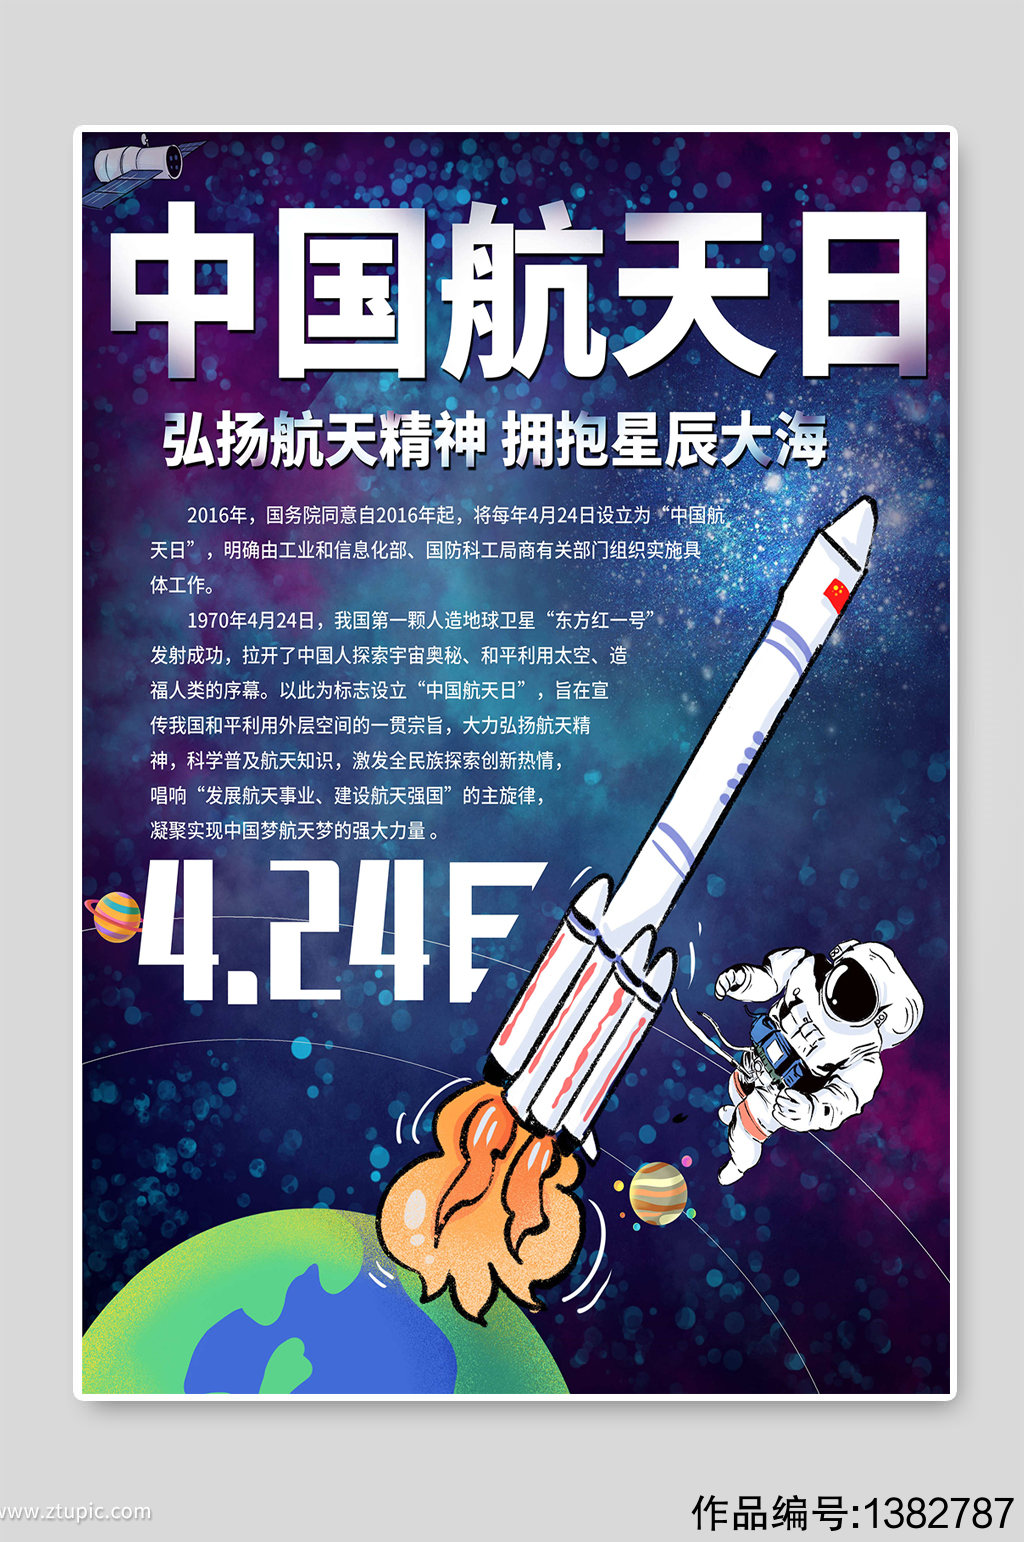 中国航天日弘扬航天精神插画宣传素材